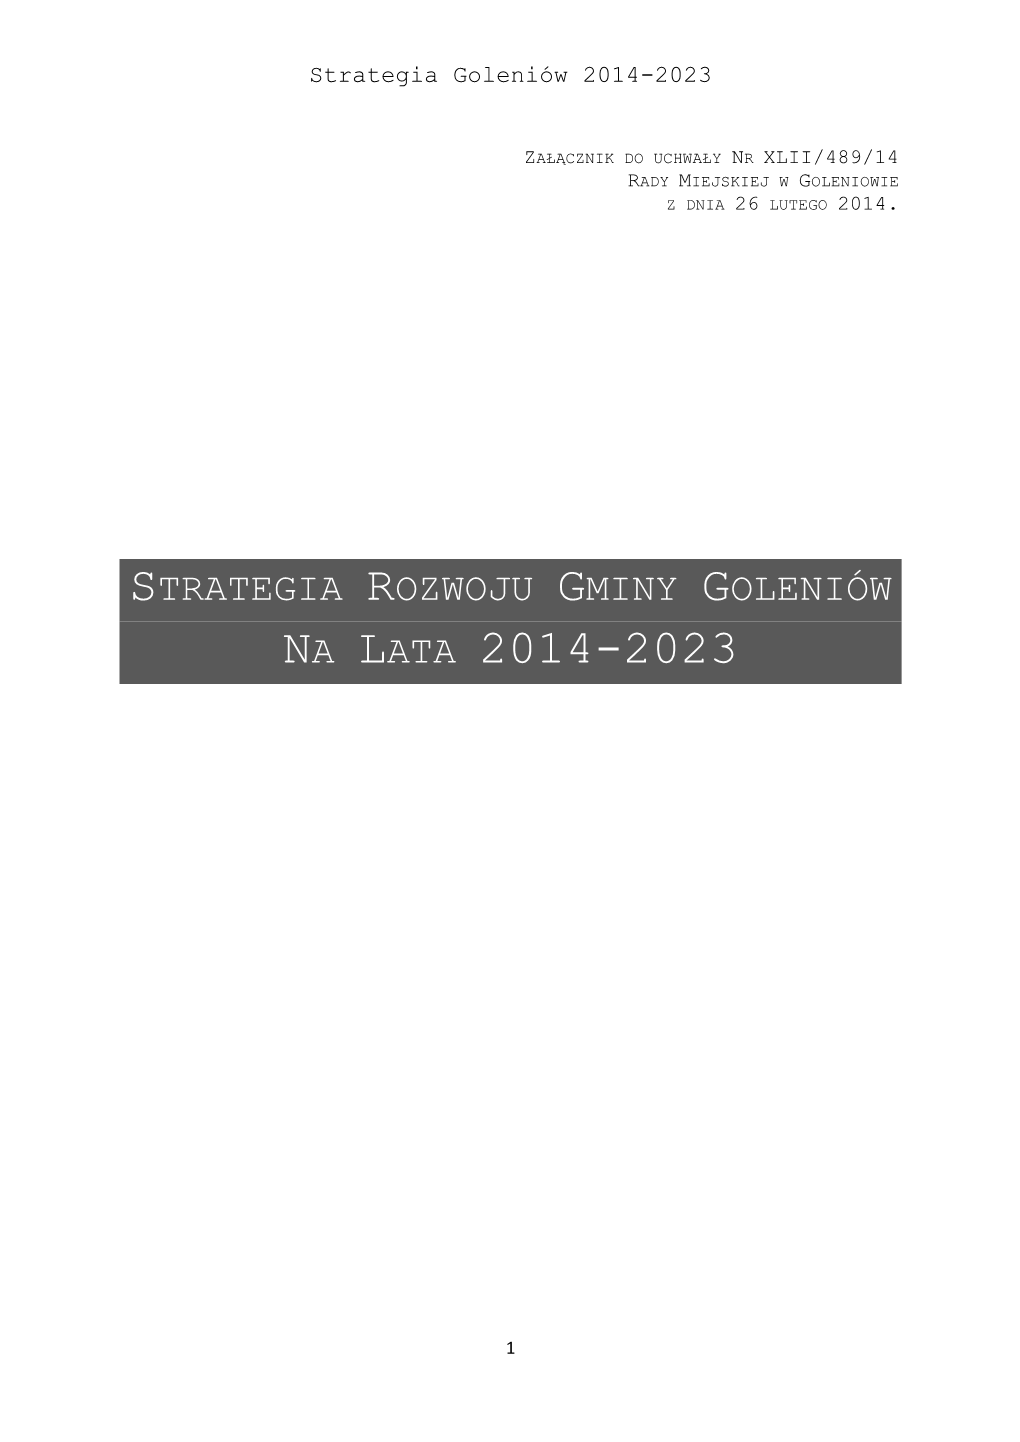 Strategia Rozwoju Gminy Goleniow 2014-2023